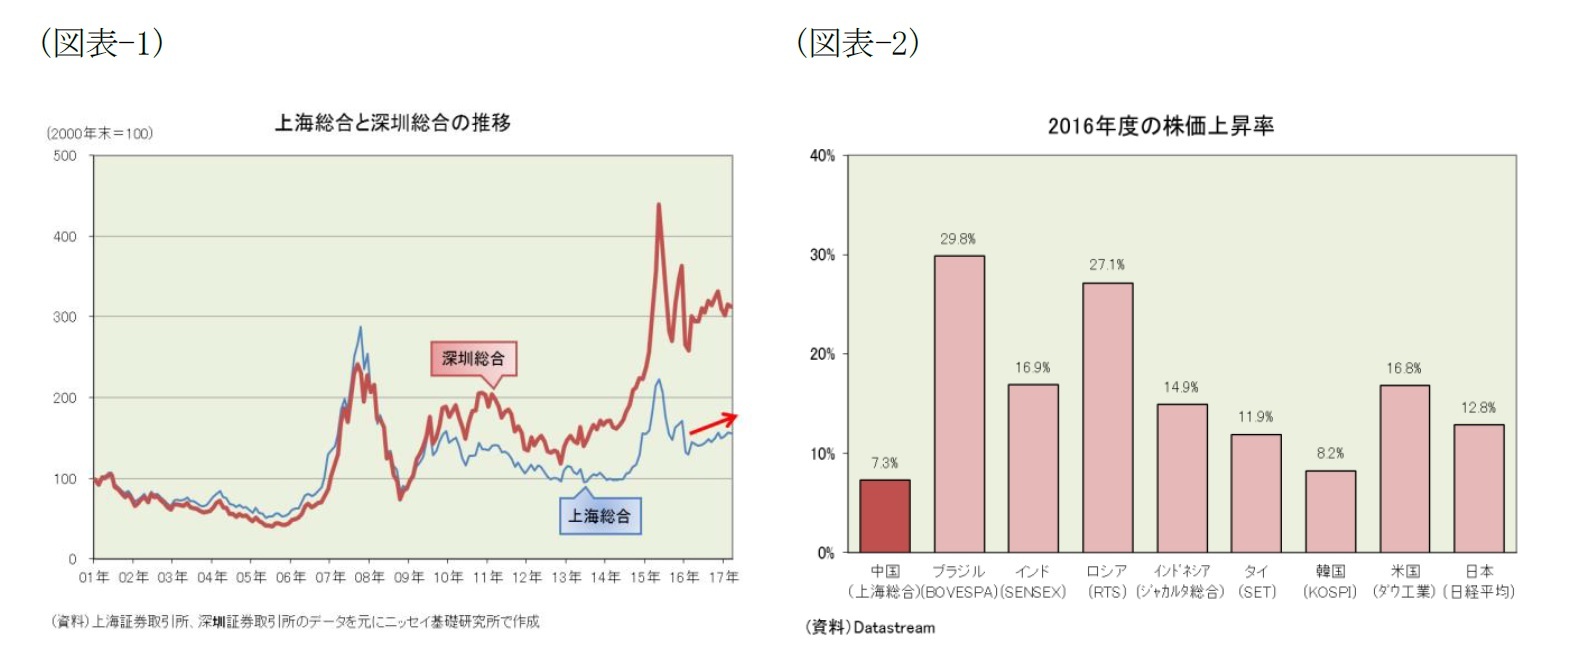 （図表-1）上海総合と深セン総合の推移/（図表-2）2016年度の株価上昇率